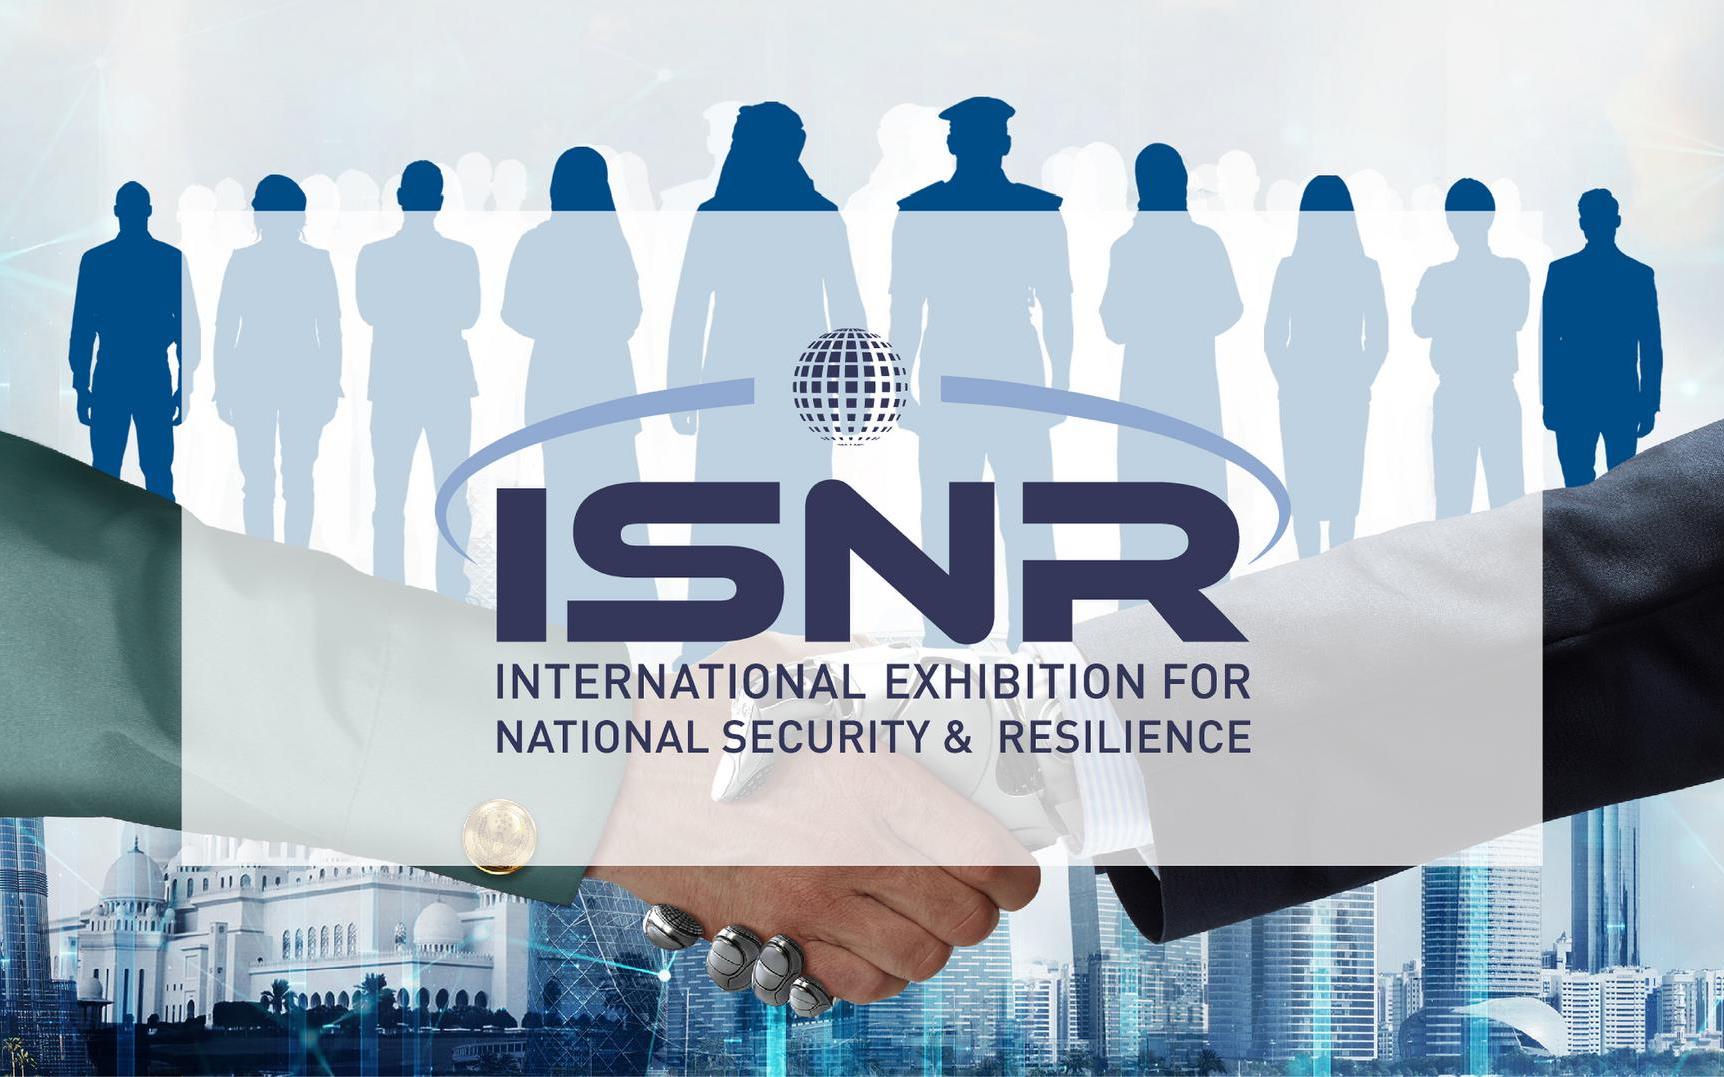 РЕД СОФТ принимает участие в Международной выставке по национальной безопасности ISNR 2018